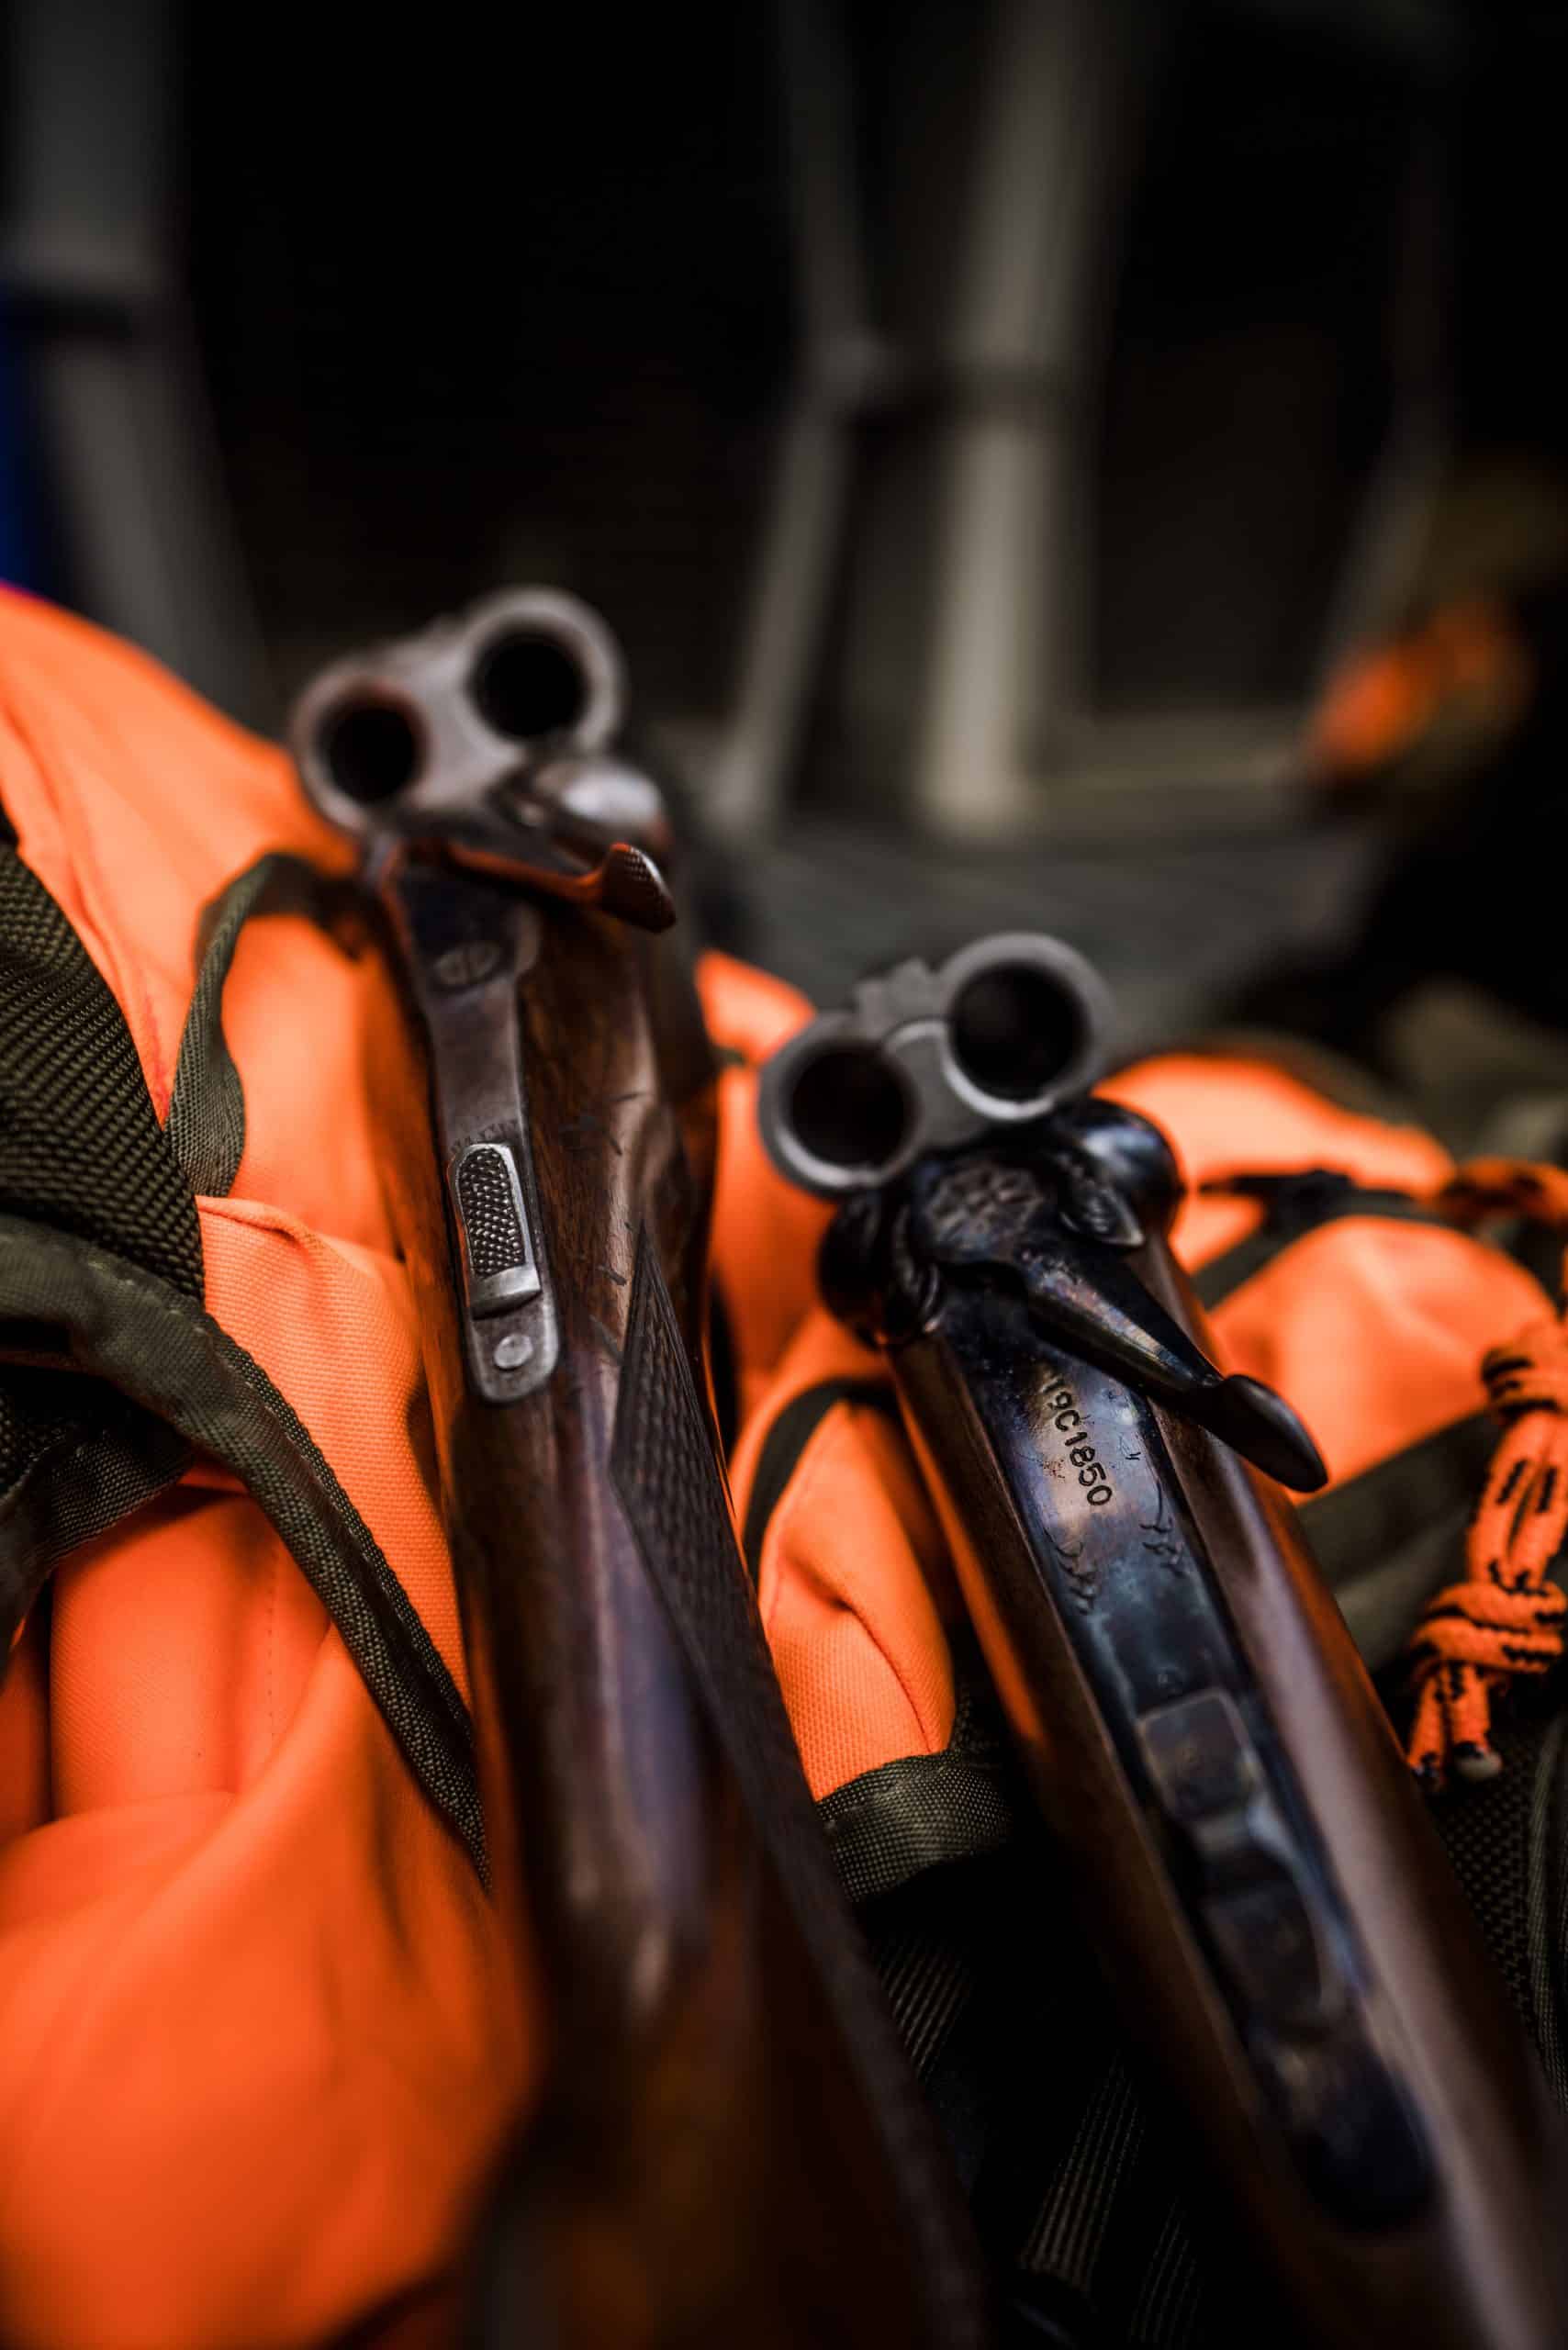 Two side-by-side shotguns rest on an orange upland vest.